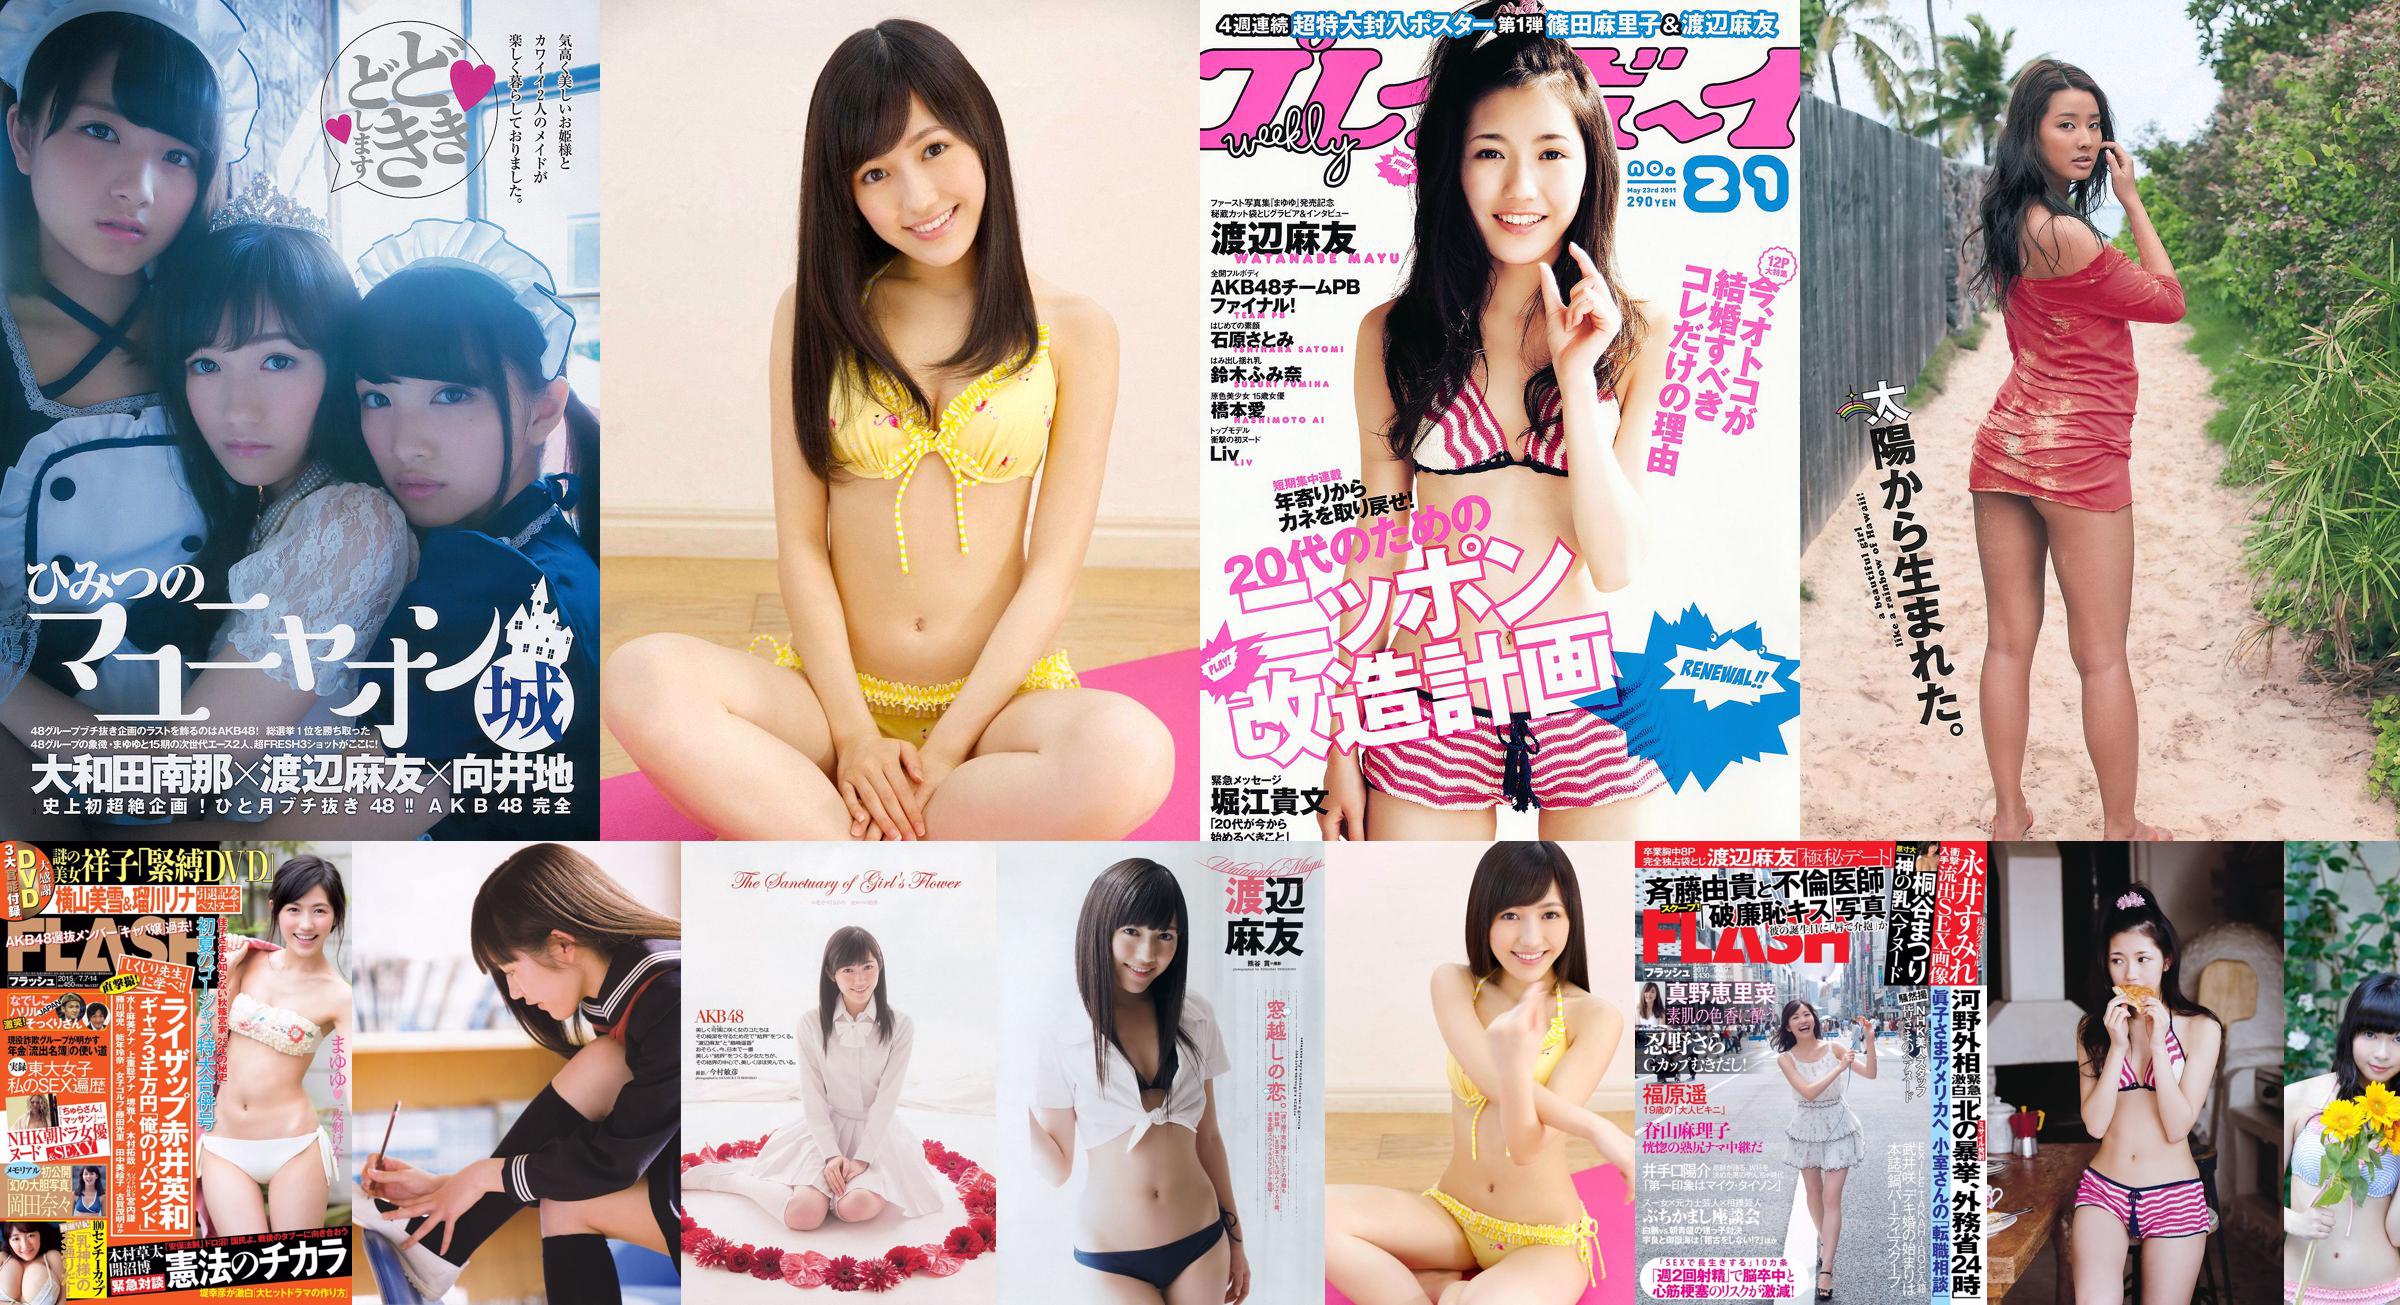 Mayu Watanabe Yumi Sugimoto Anna Ishibashi Miwako Kakei SKE48 Aya Nakata Yume Hazuki [Weekly Playboy] 2014 No.36 Foto Miwako No.d7d713 Pagina 3